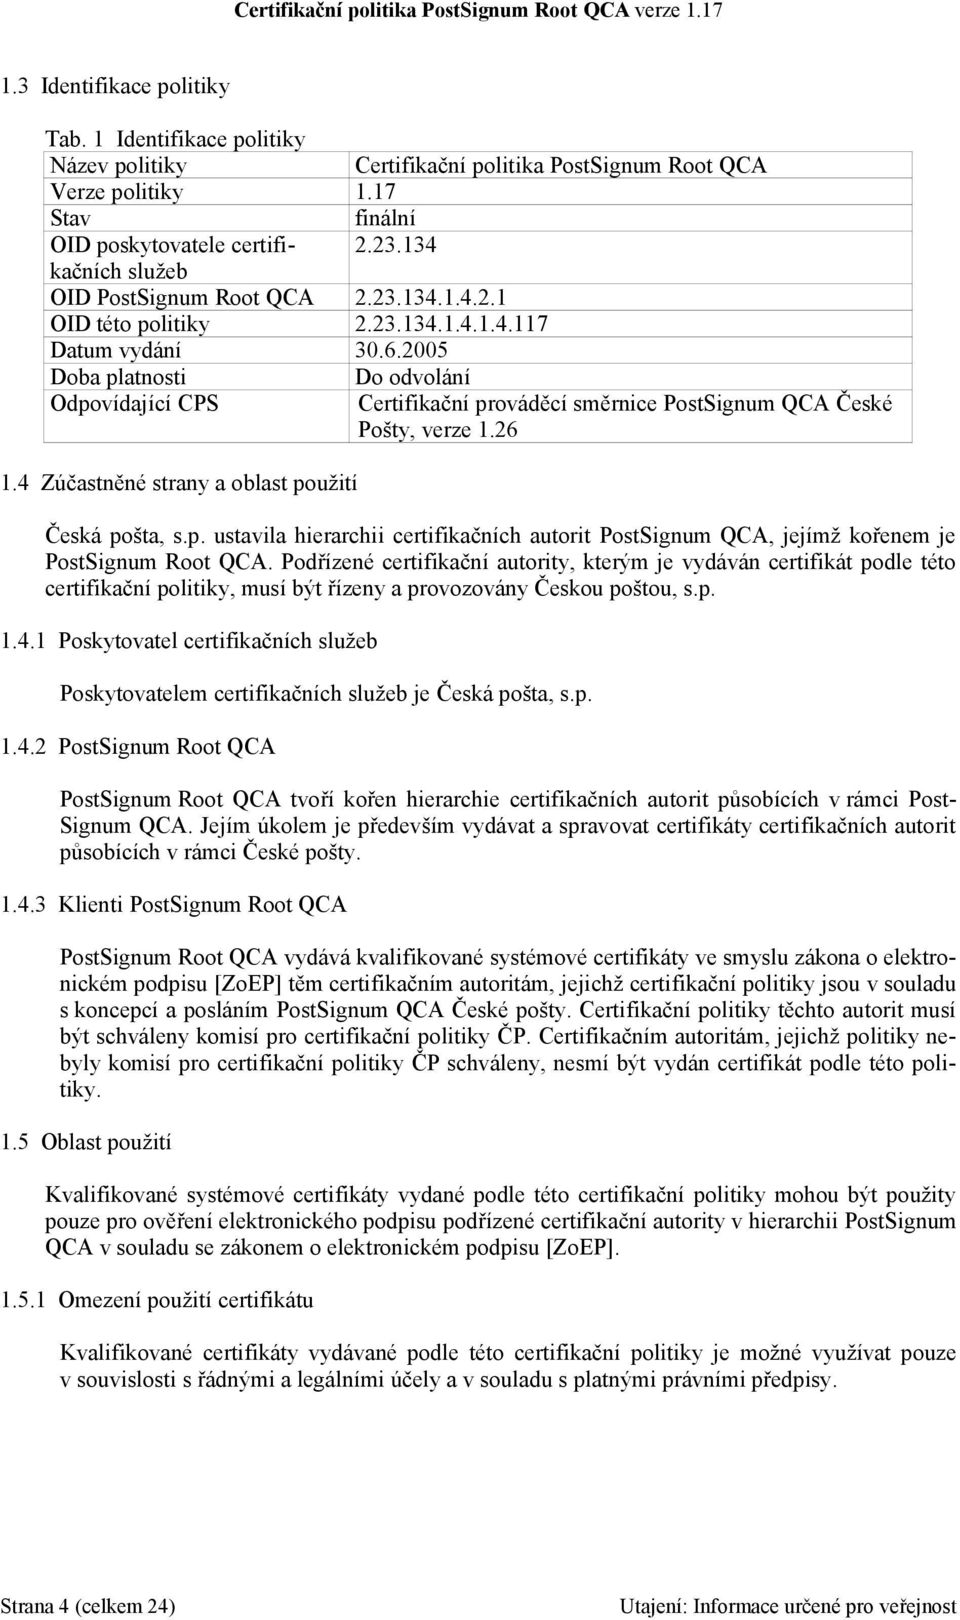 2005 Doba platnosti Do odvolání Odpovídající CPS Certifikační prováděcí směrnice PostSignum QCA České Pošty, verze 1.26 1.4 Zúčastněné strany a oblast použití Česká pošta, s.p. ustavila hierarchii certifikačních autorit PostSignum QCA, jejímž kořenem je PostSignum Root QCA.